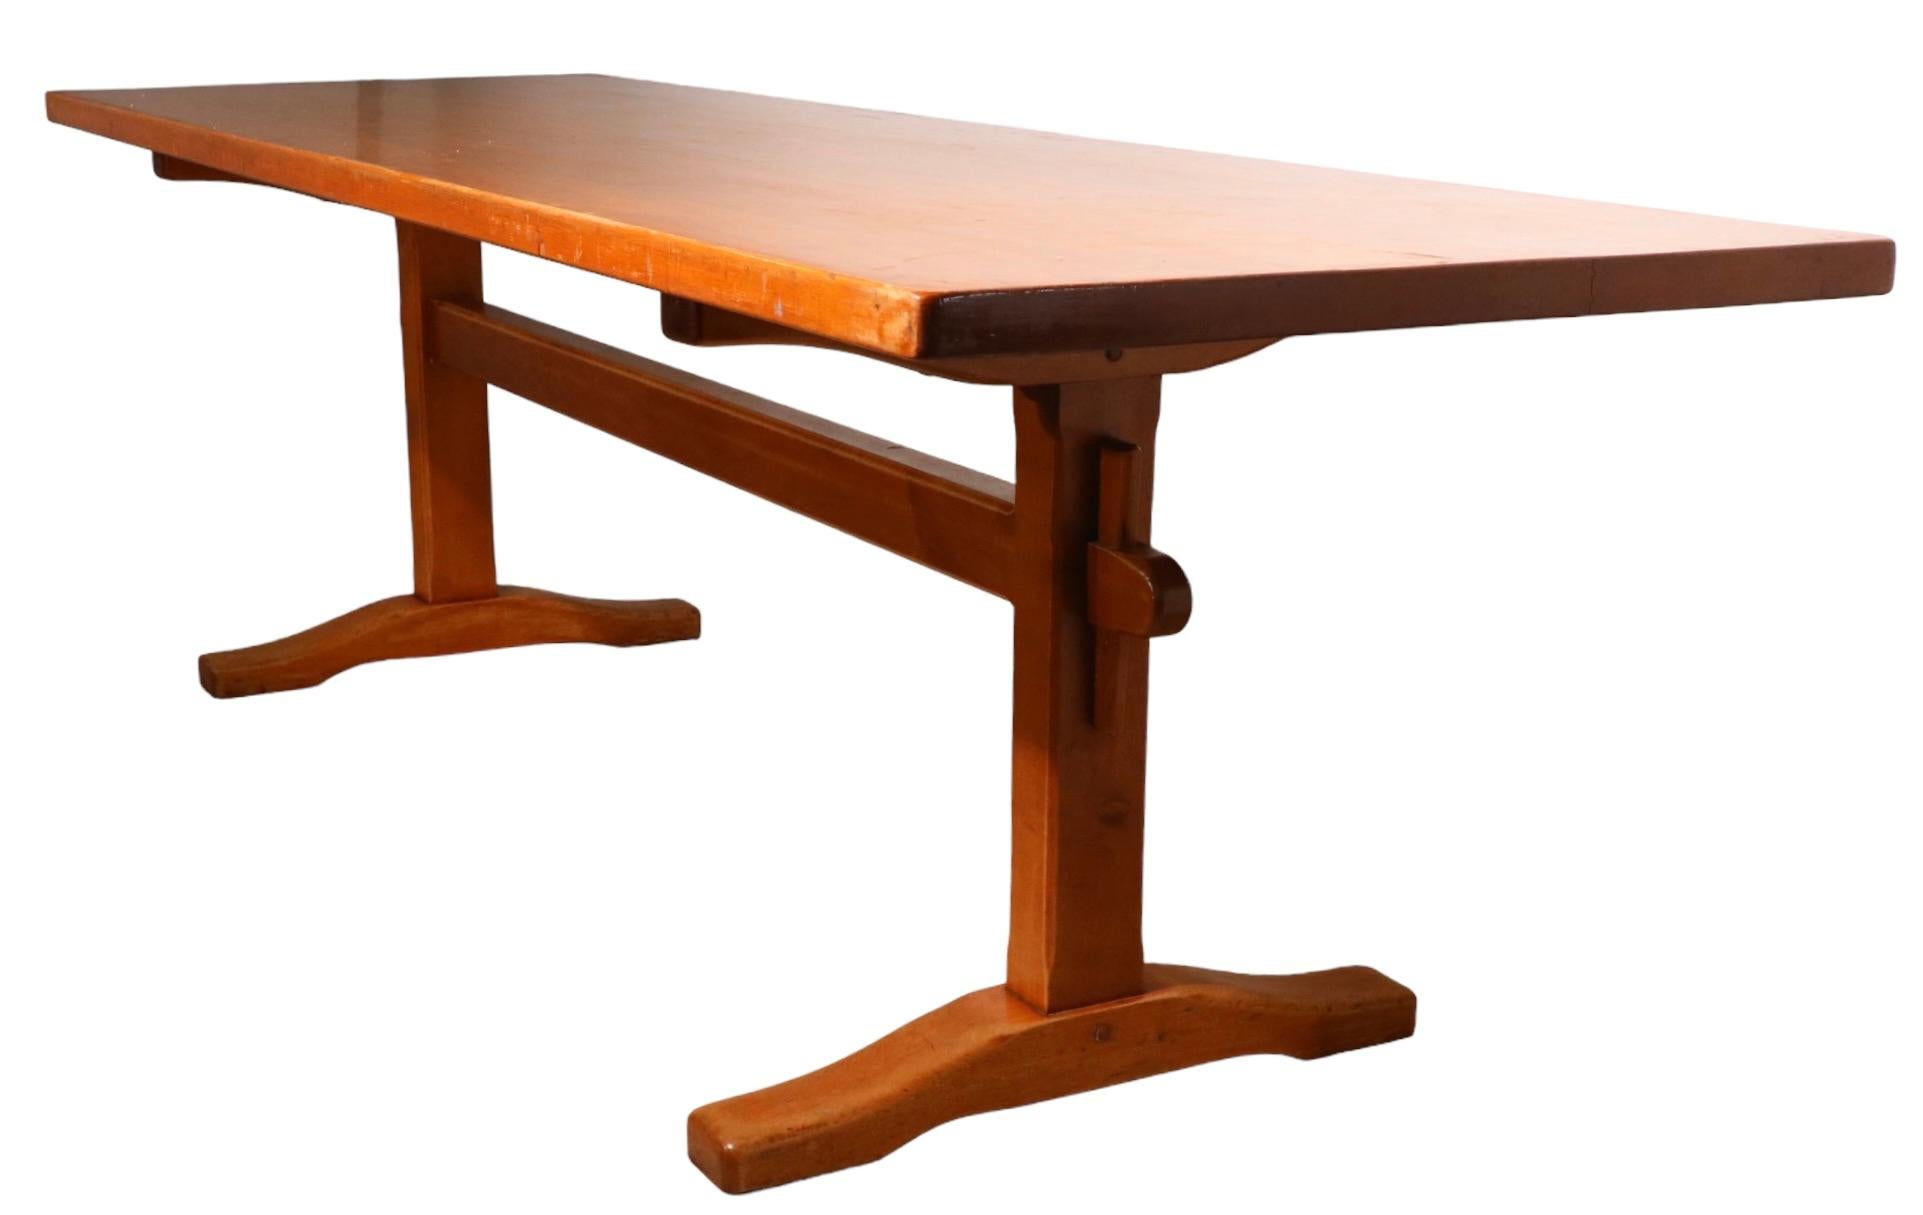 Exceptionnel groupe de tables de ferme fabriqué par Stickley, construit en érable massif marqué Stickley Fayetteville Syracuse. Les tables présentent une base en forme de tréteau qui supporte un épais plateau rectangulaire. Cette table est le modèle